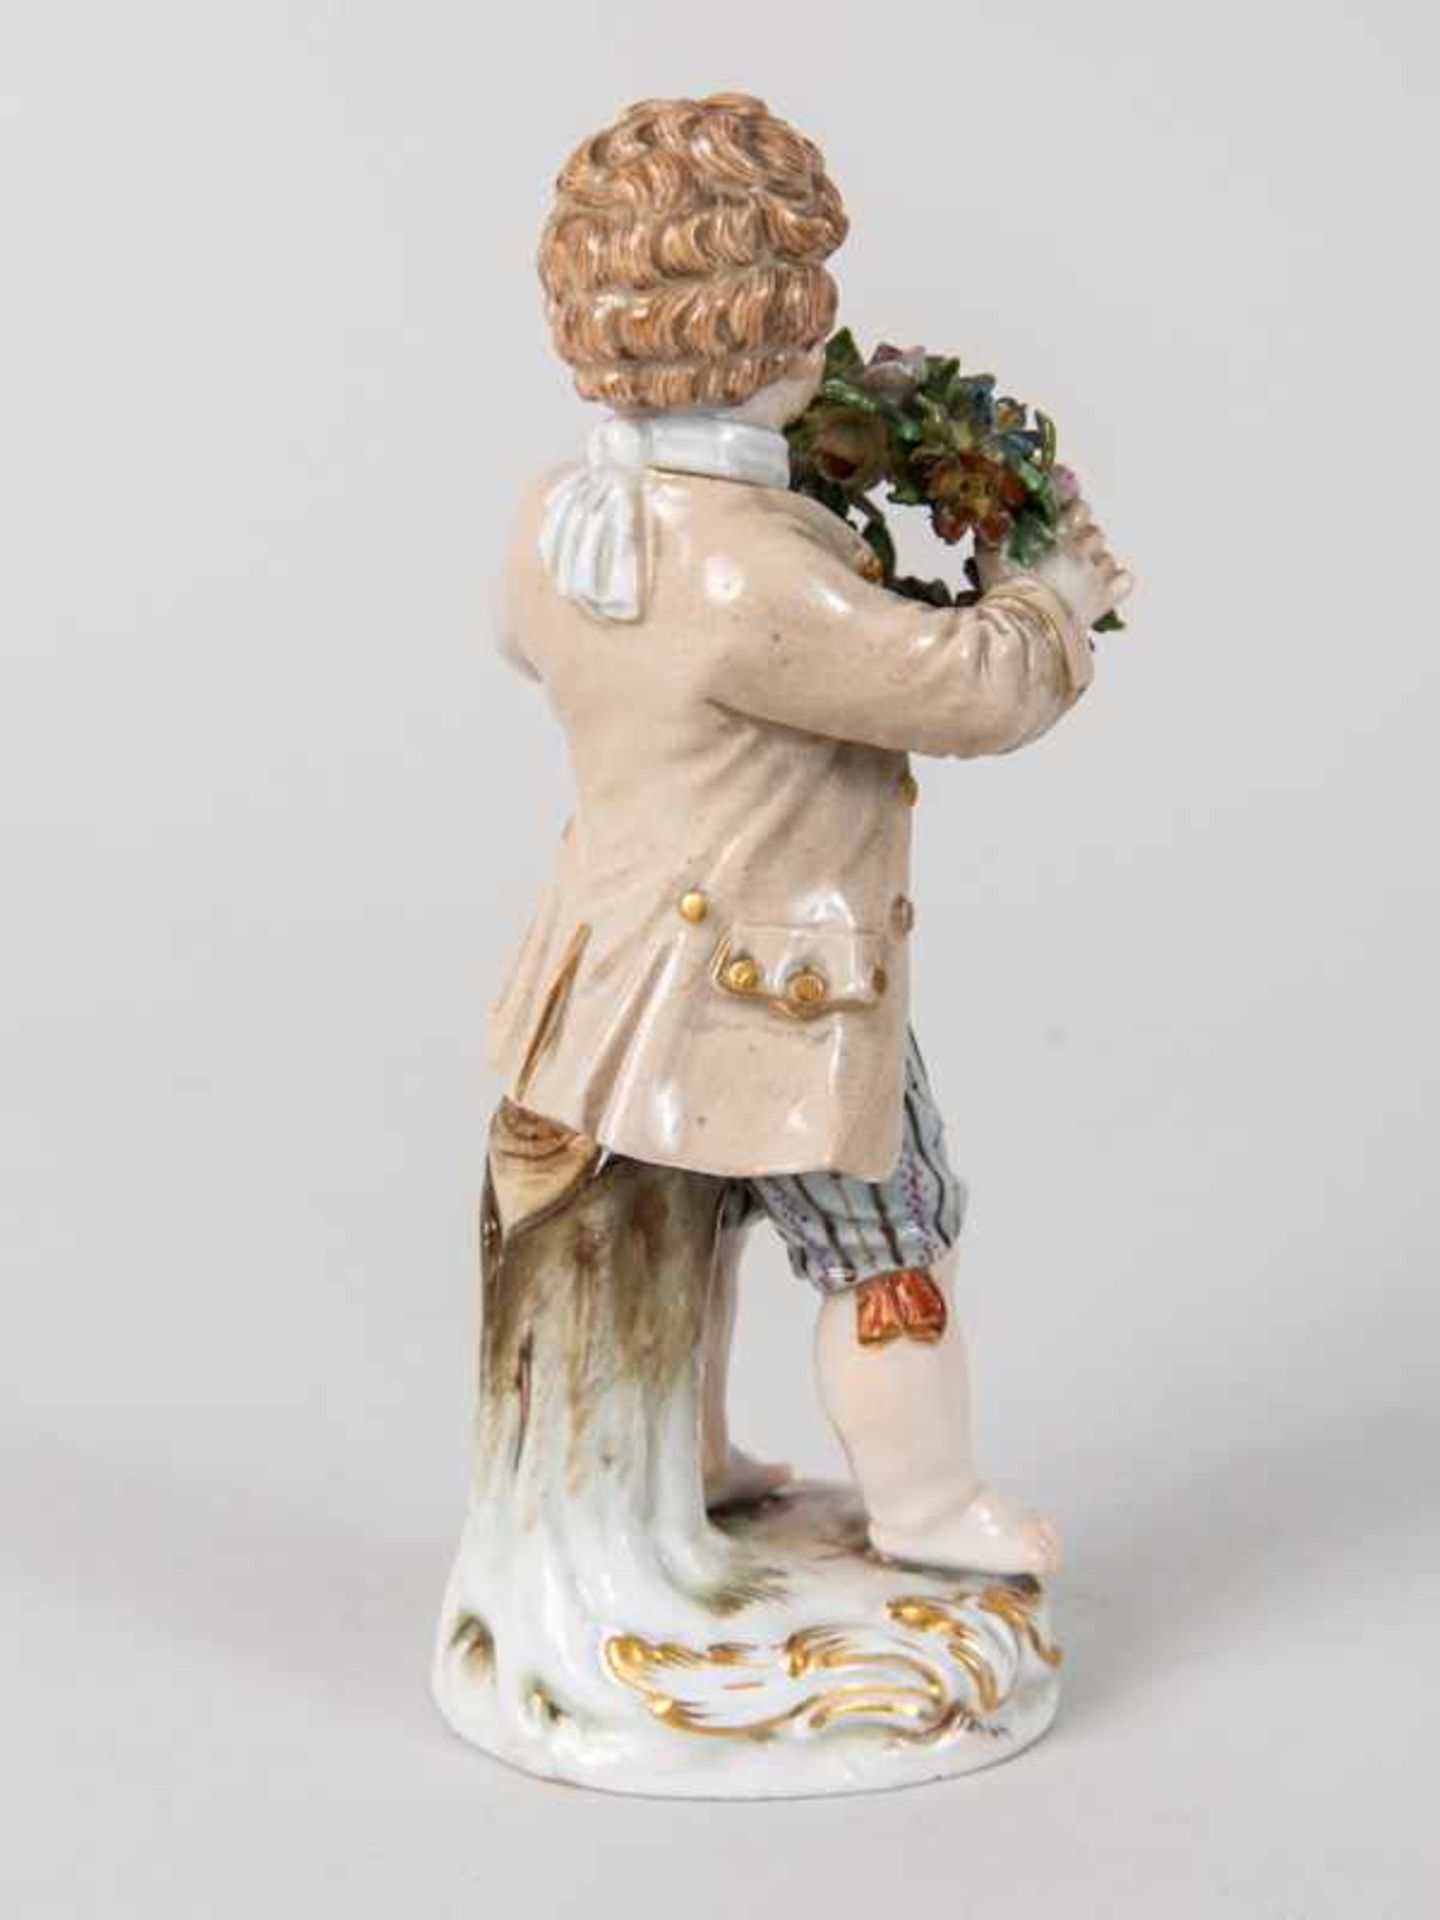 Porzellanfigur "Gärtnerjunge", Meissen, um 1900. - Bild 6 aus 7